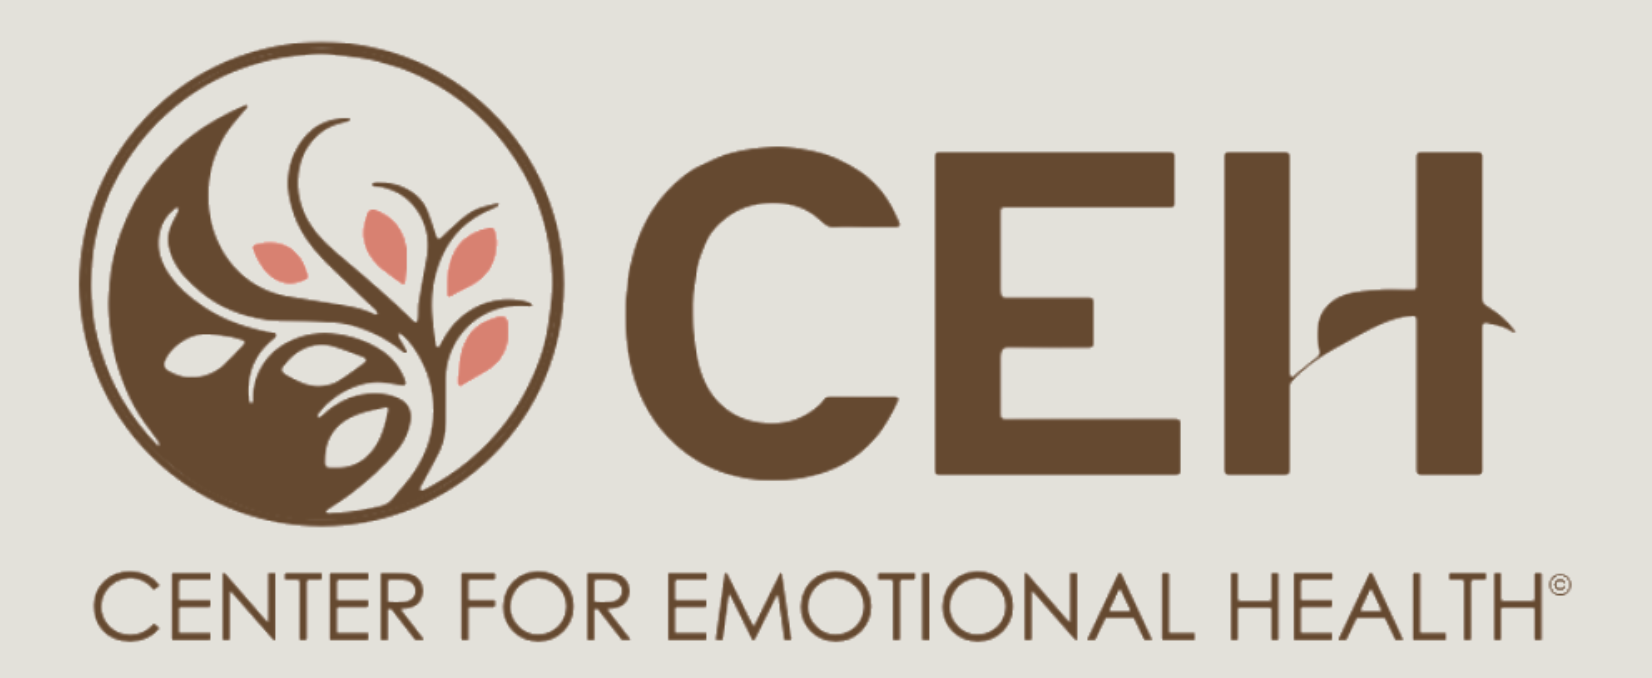 Center for Emotional Health logo